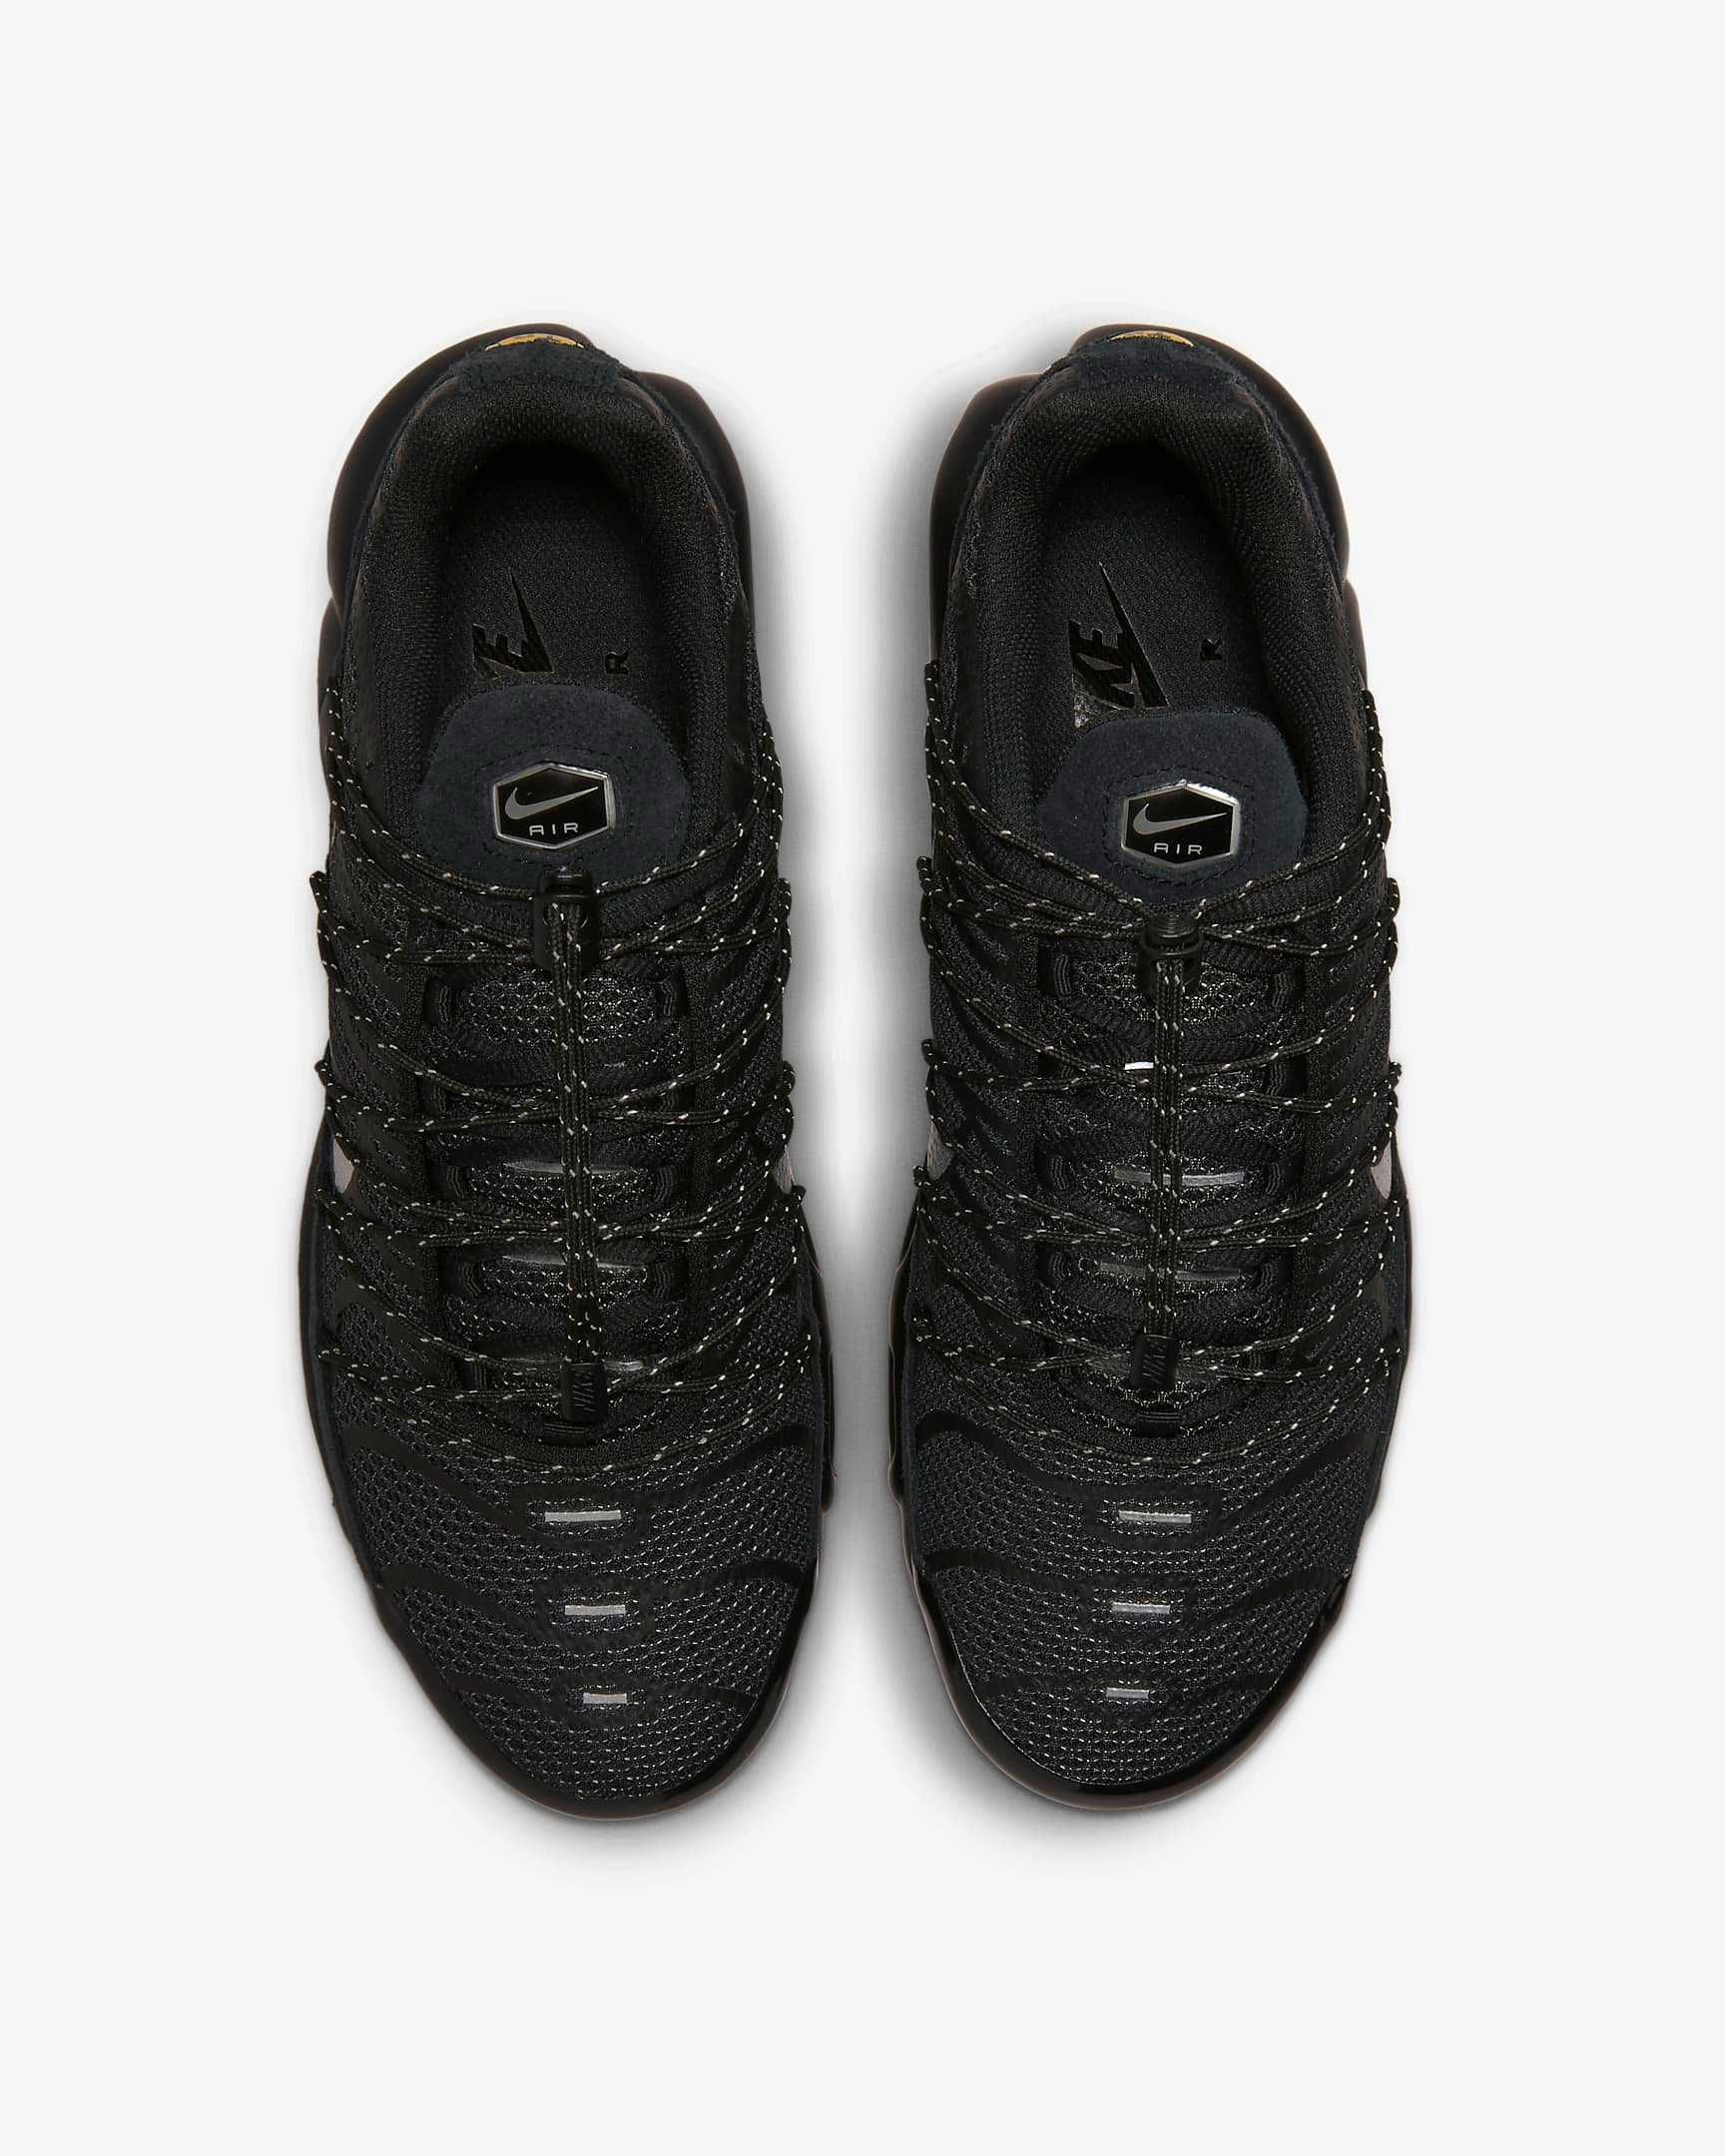 New Nike Air Max Plus Utility Black Men Sneakers